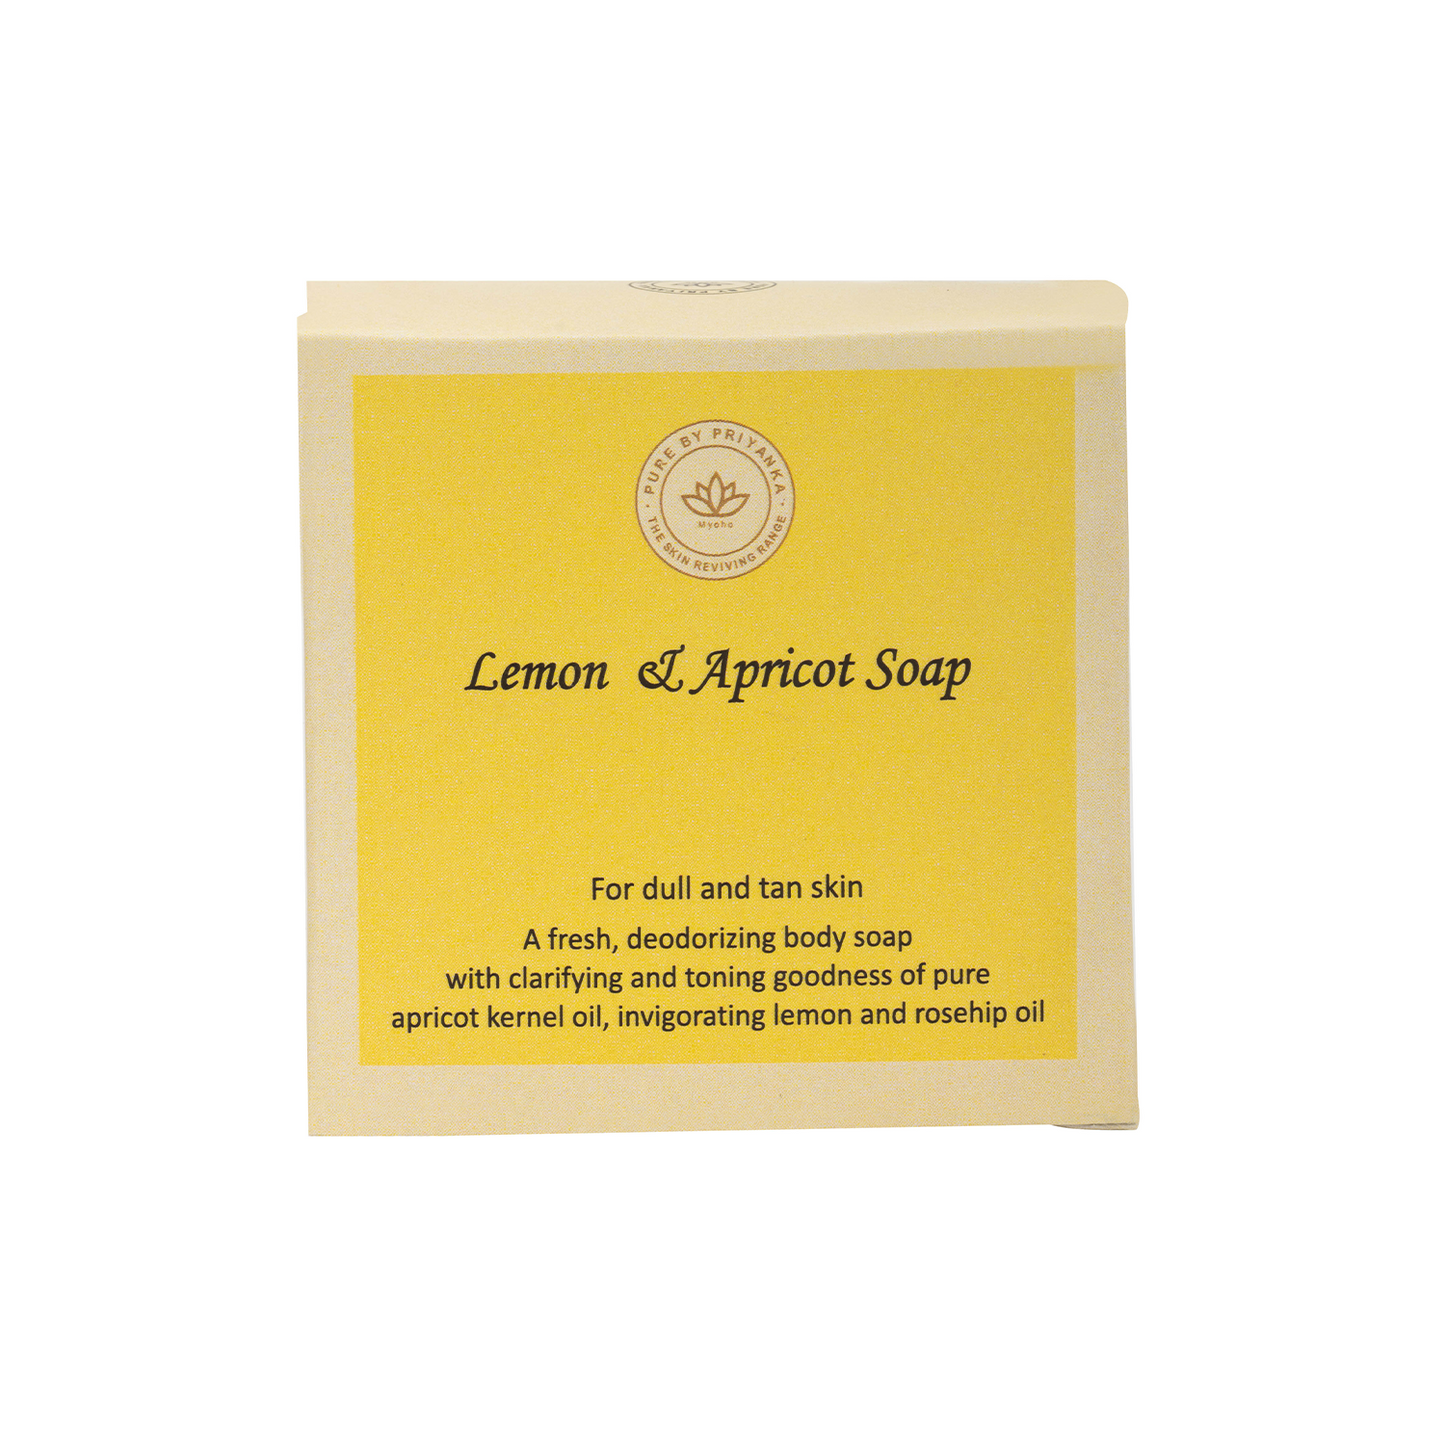 Lemon & Apricot Soap